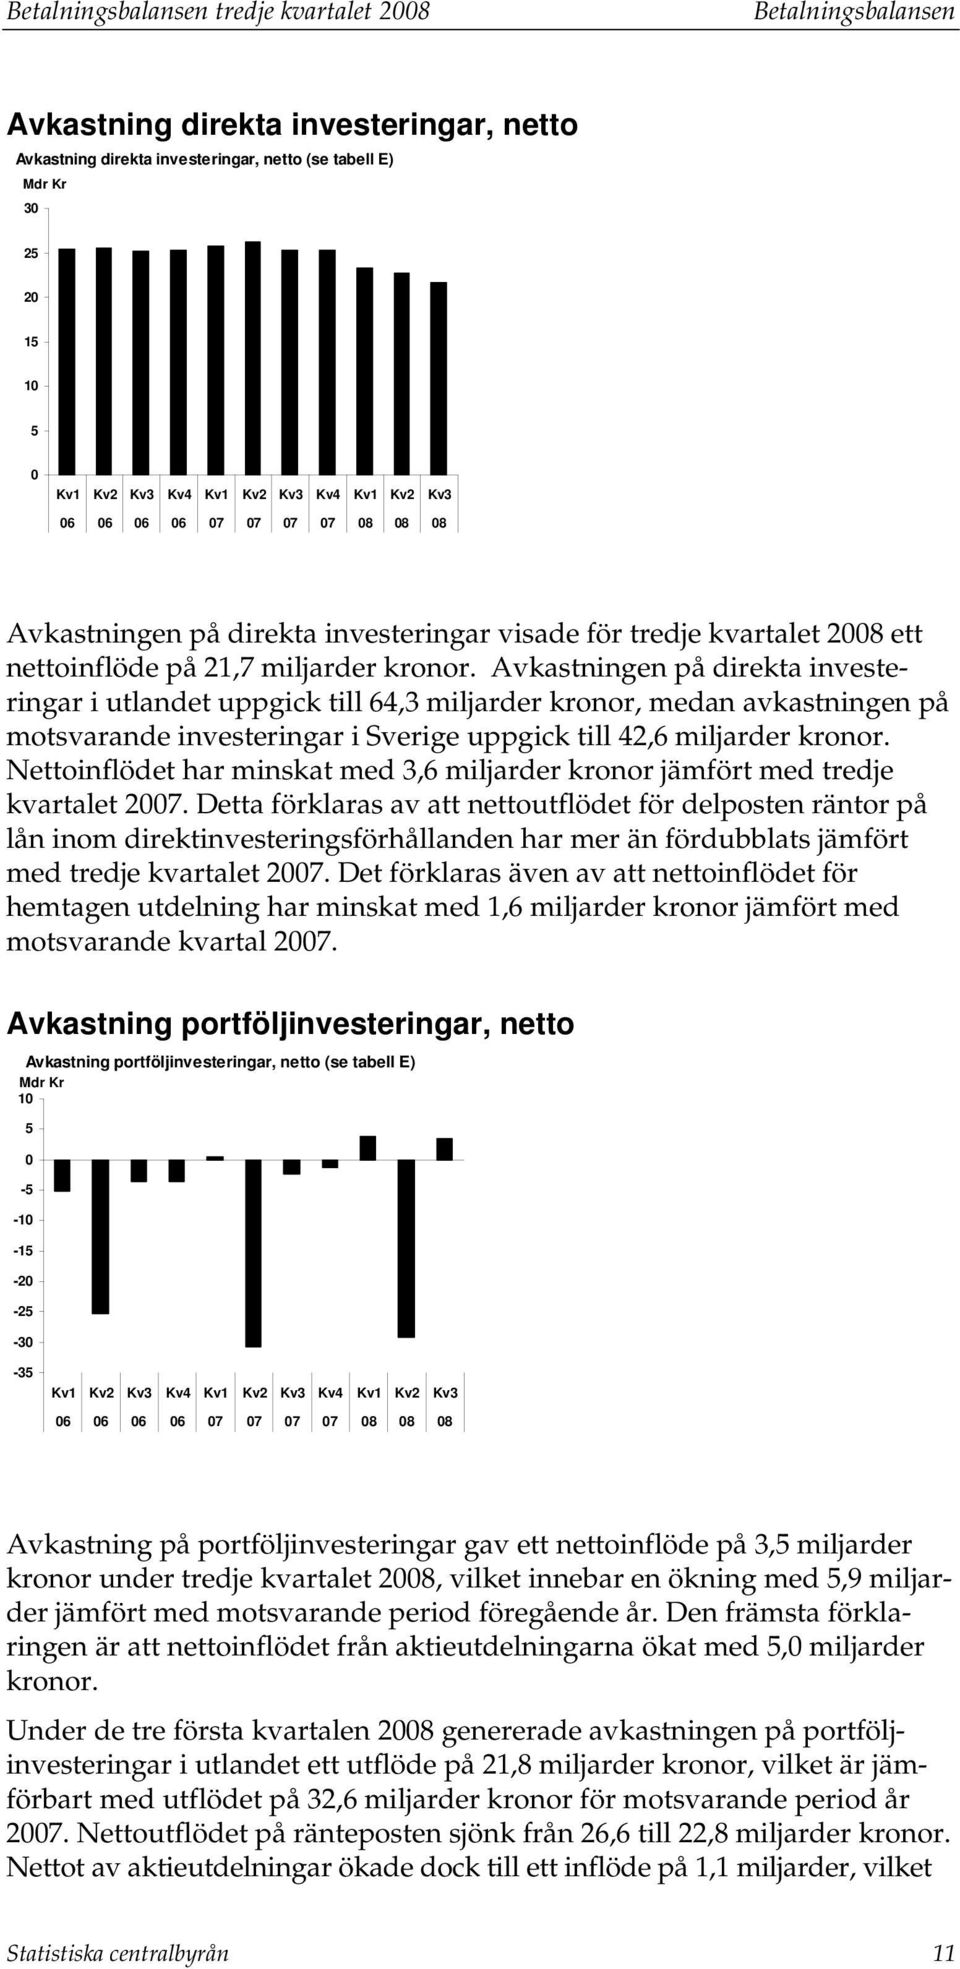 Avkasningen på direka inveseringar i ulande uppgick ill 64,3 miljarder kronor, medan avkasningen på mosvarande inveseringar i Sverige uppgick ill 42,6 miljarder kronor.